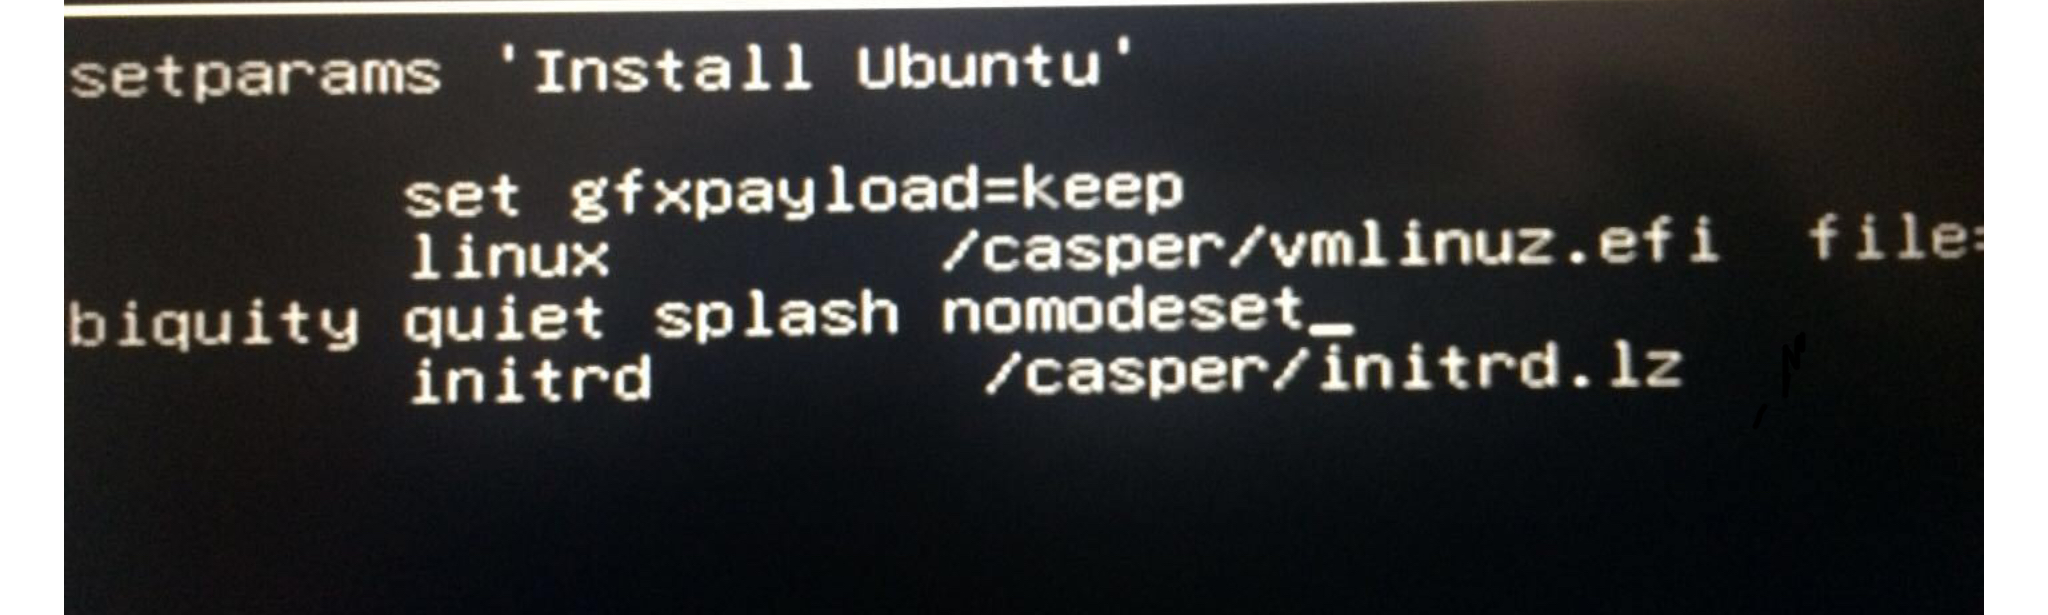 UbuntuNoModeSet